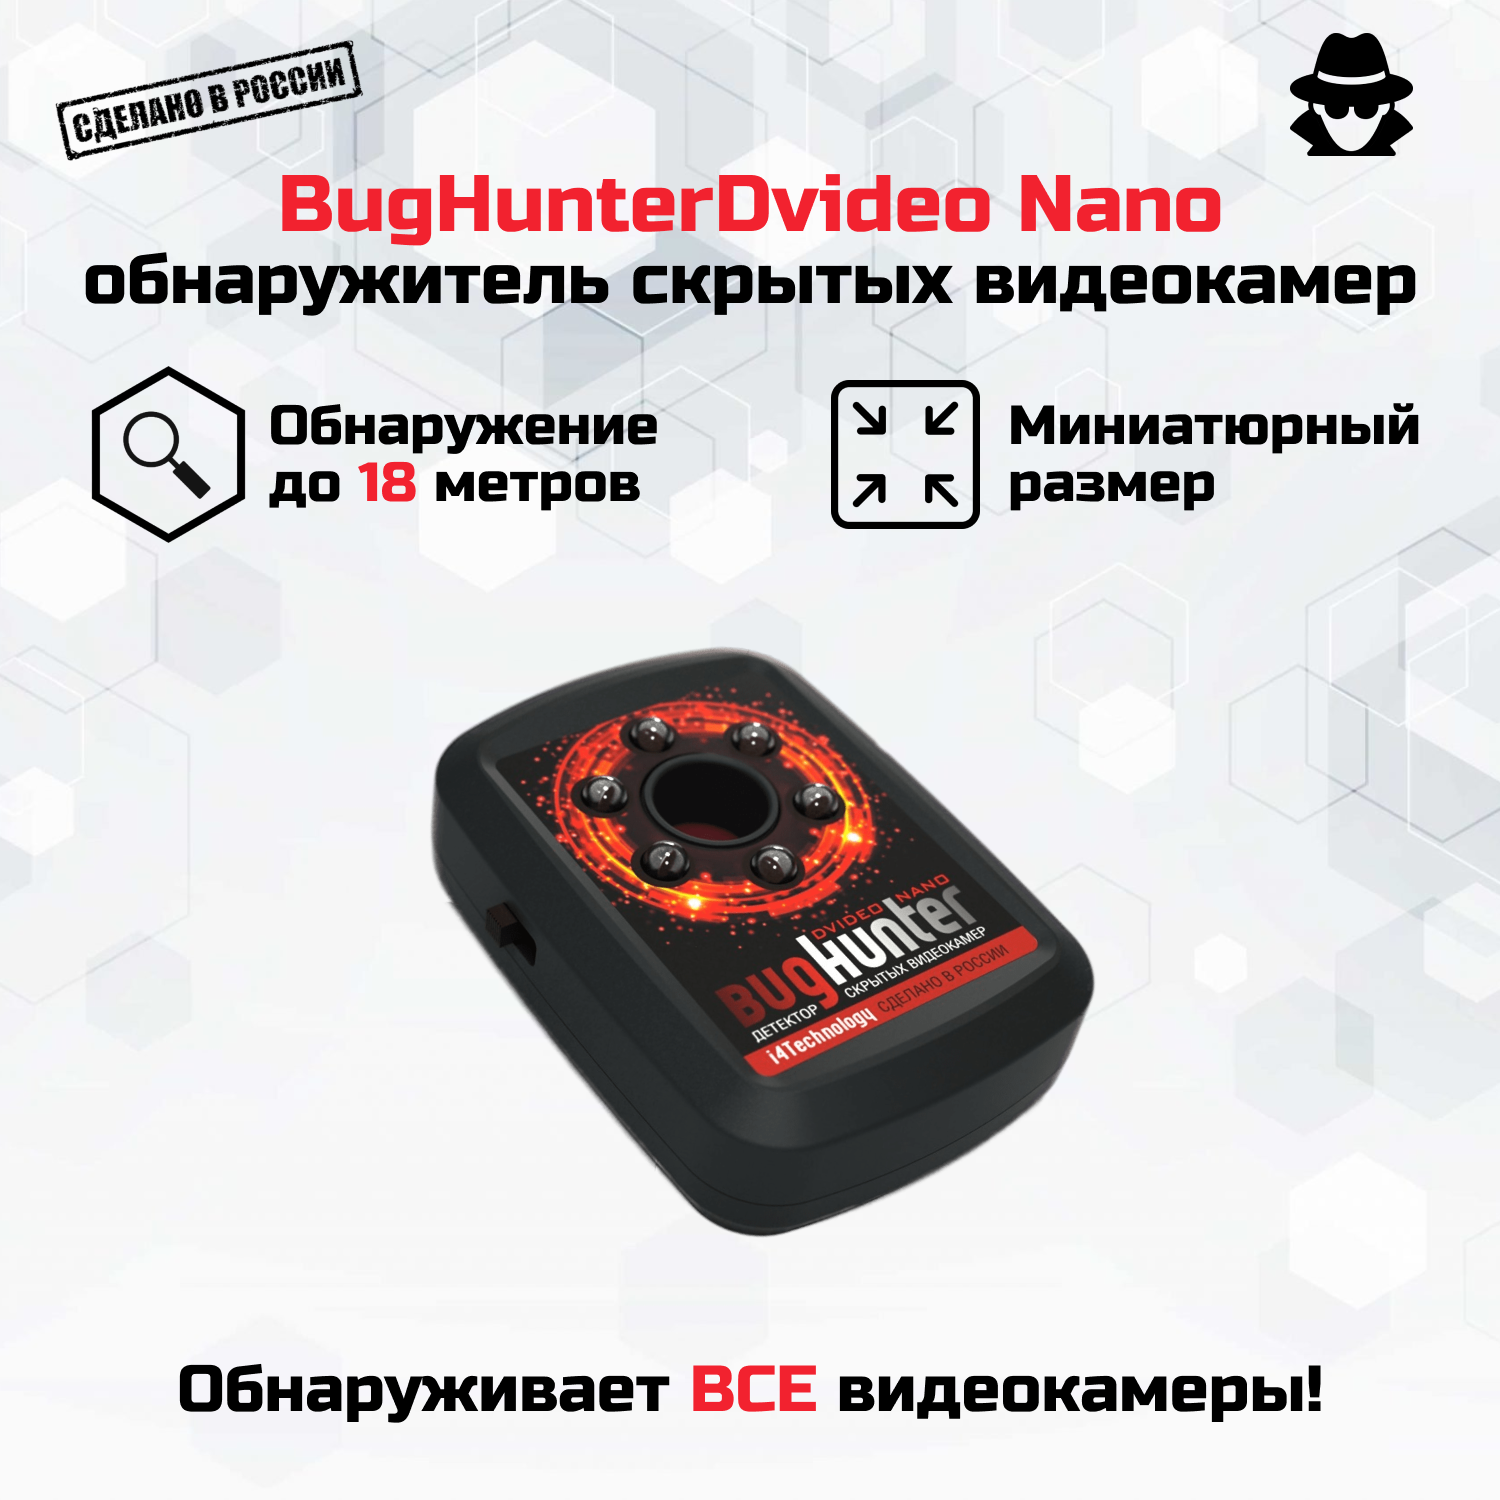 Поисковик и детектор скрытых видеокамер BugHunter Dvideo Nano